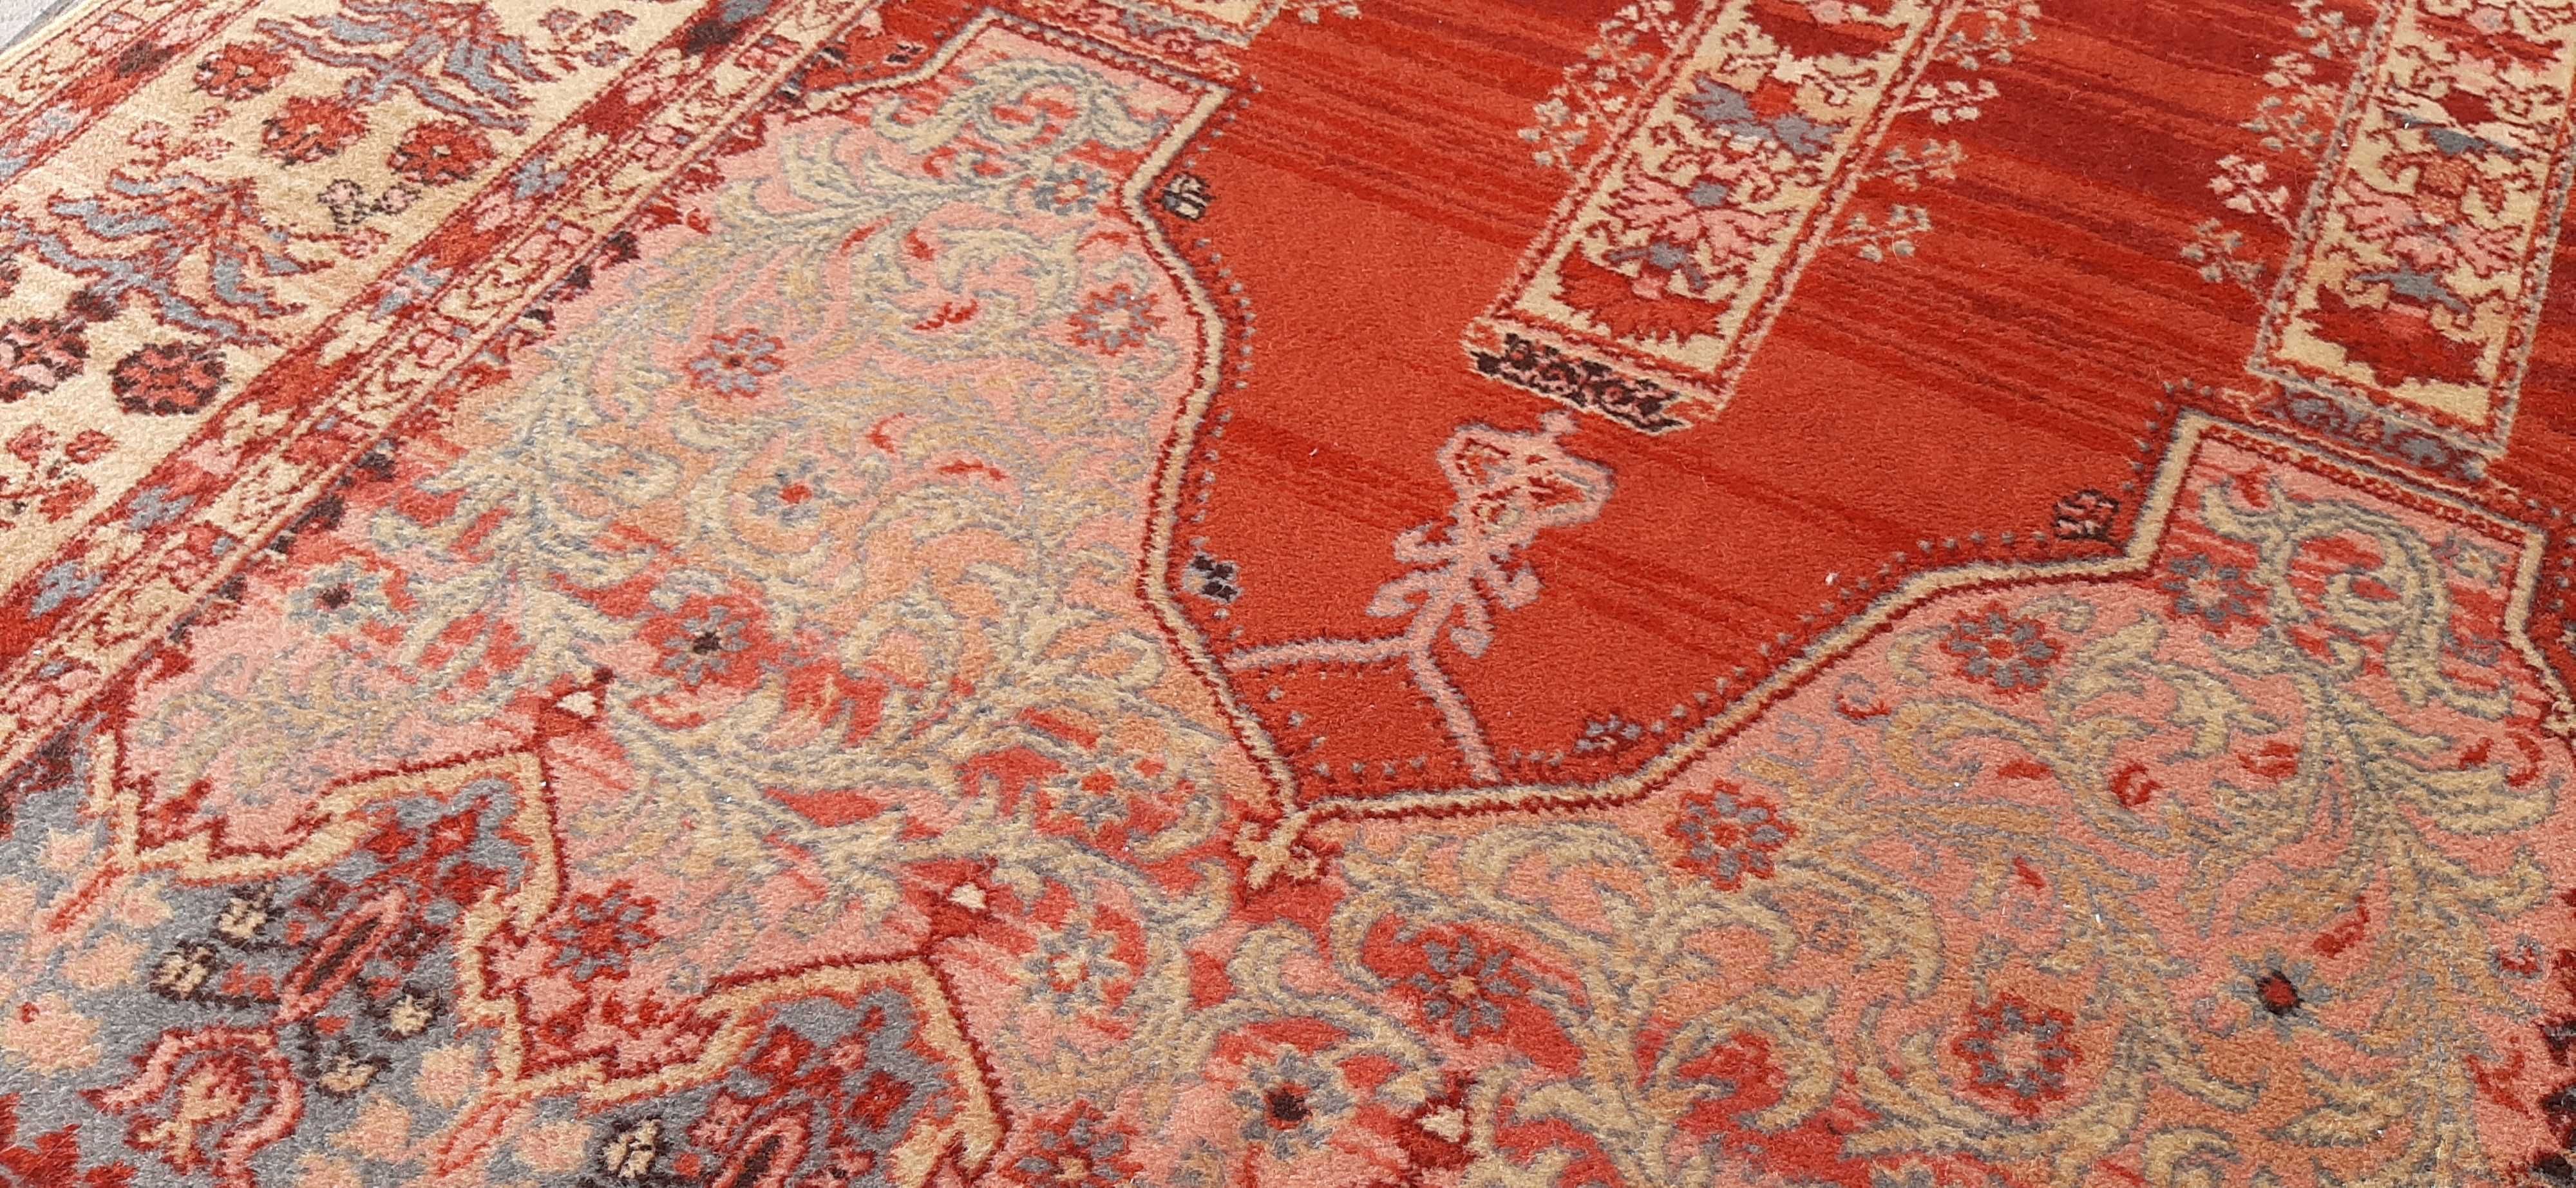 Samarkand dywan wełniany od Louis De Poortere 191 x 136 cm wełna